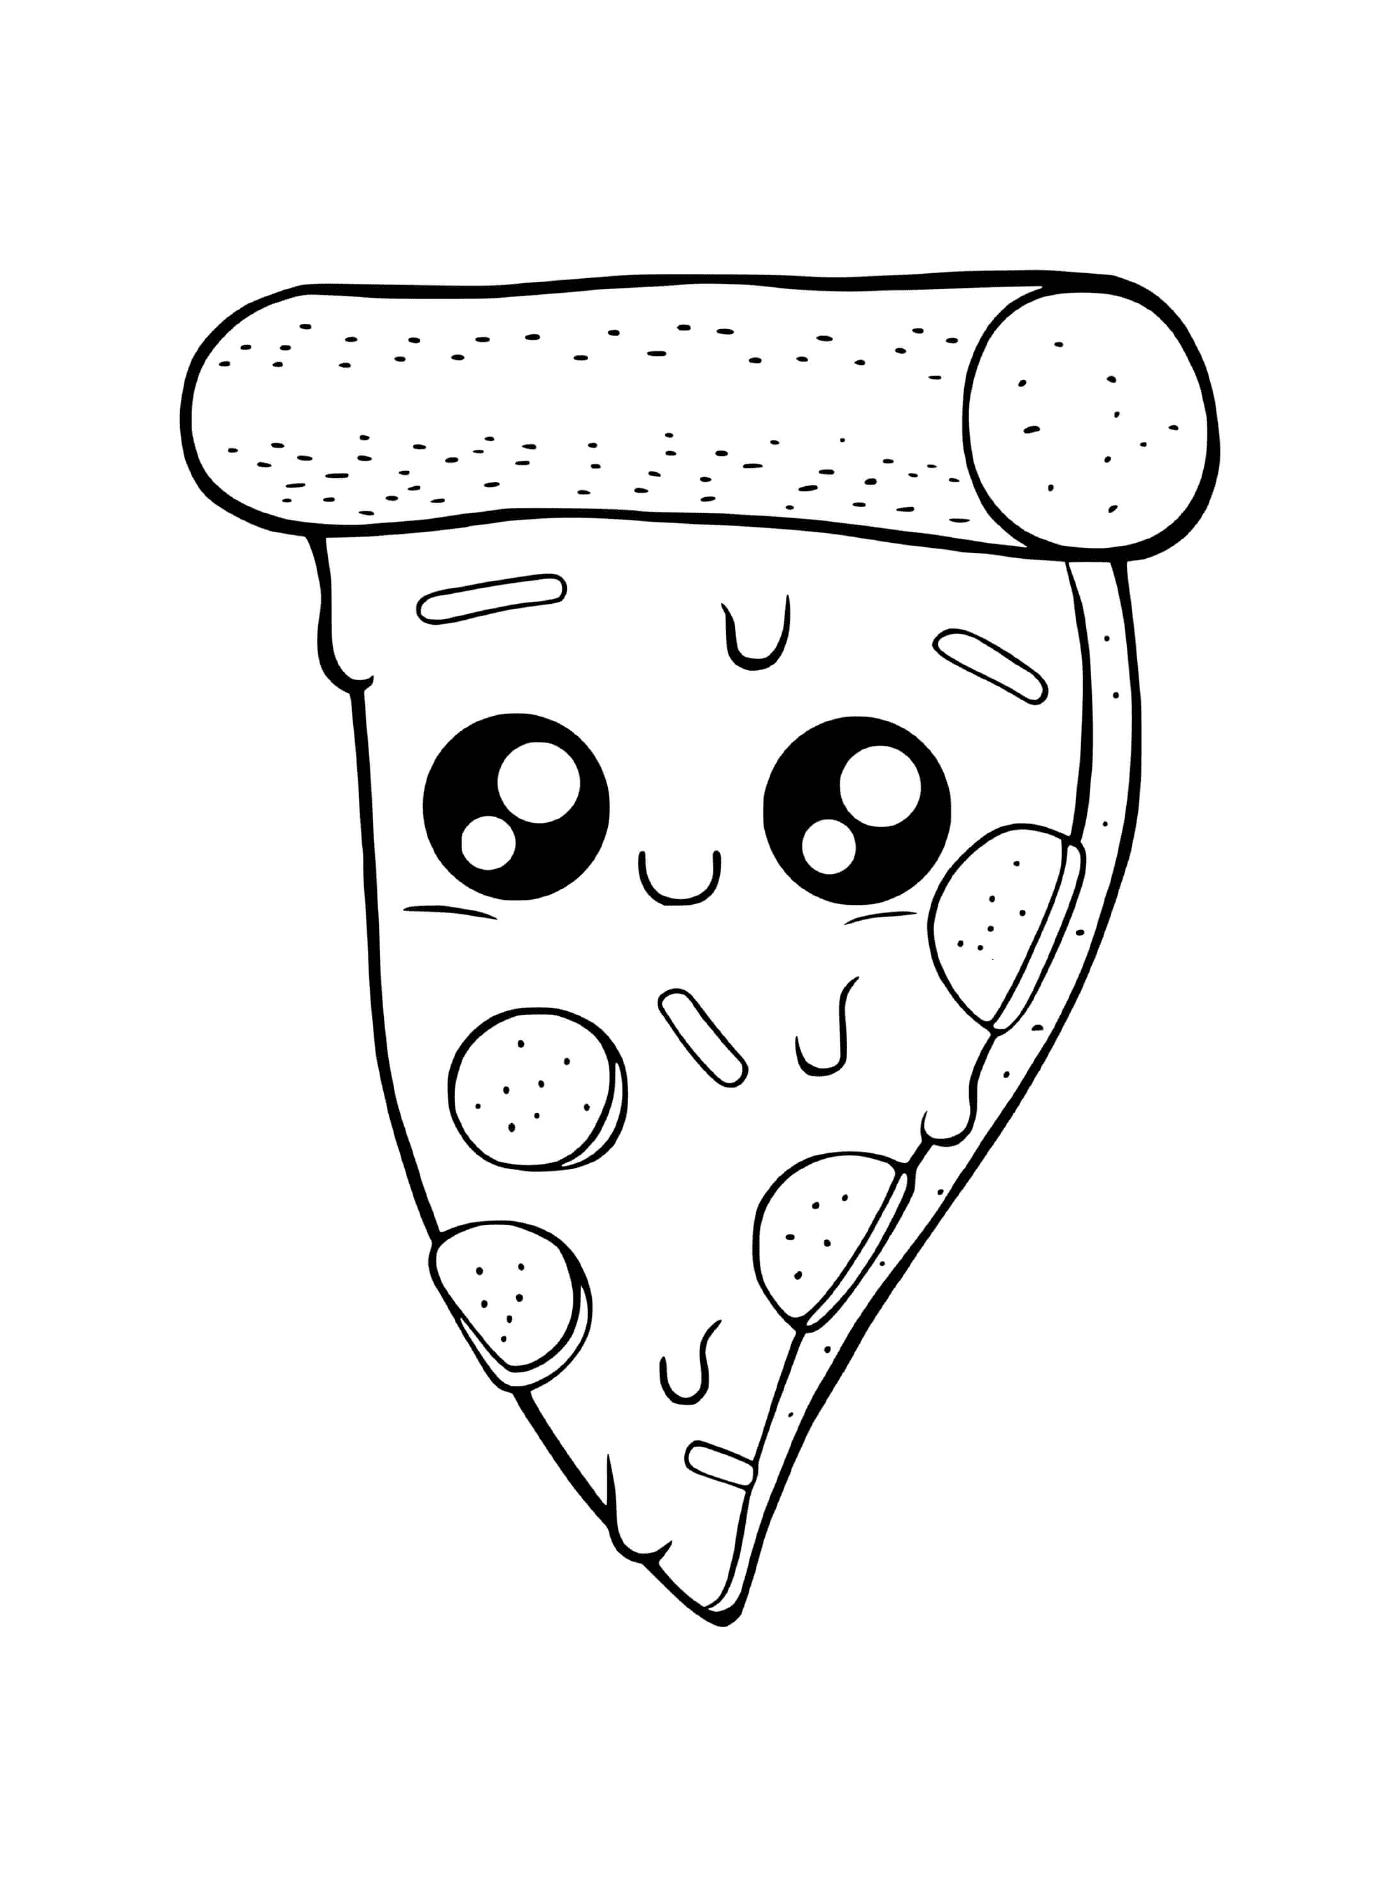  Пицца с расплавленным сыром 